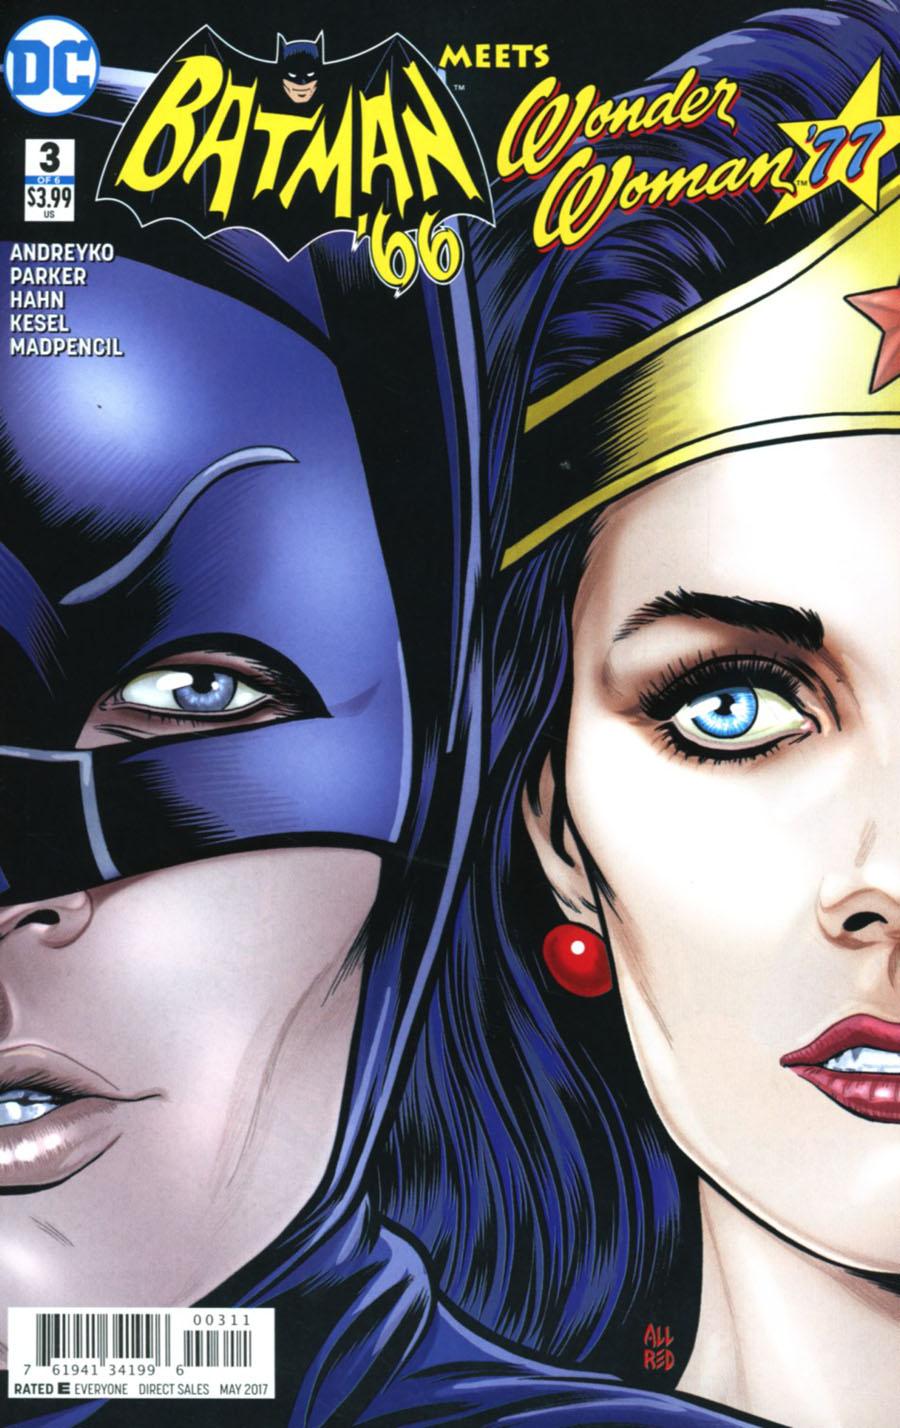 Batman 66 Meets Wonder Woman 77 Vol. 1 #3